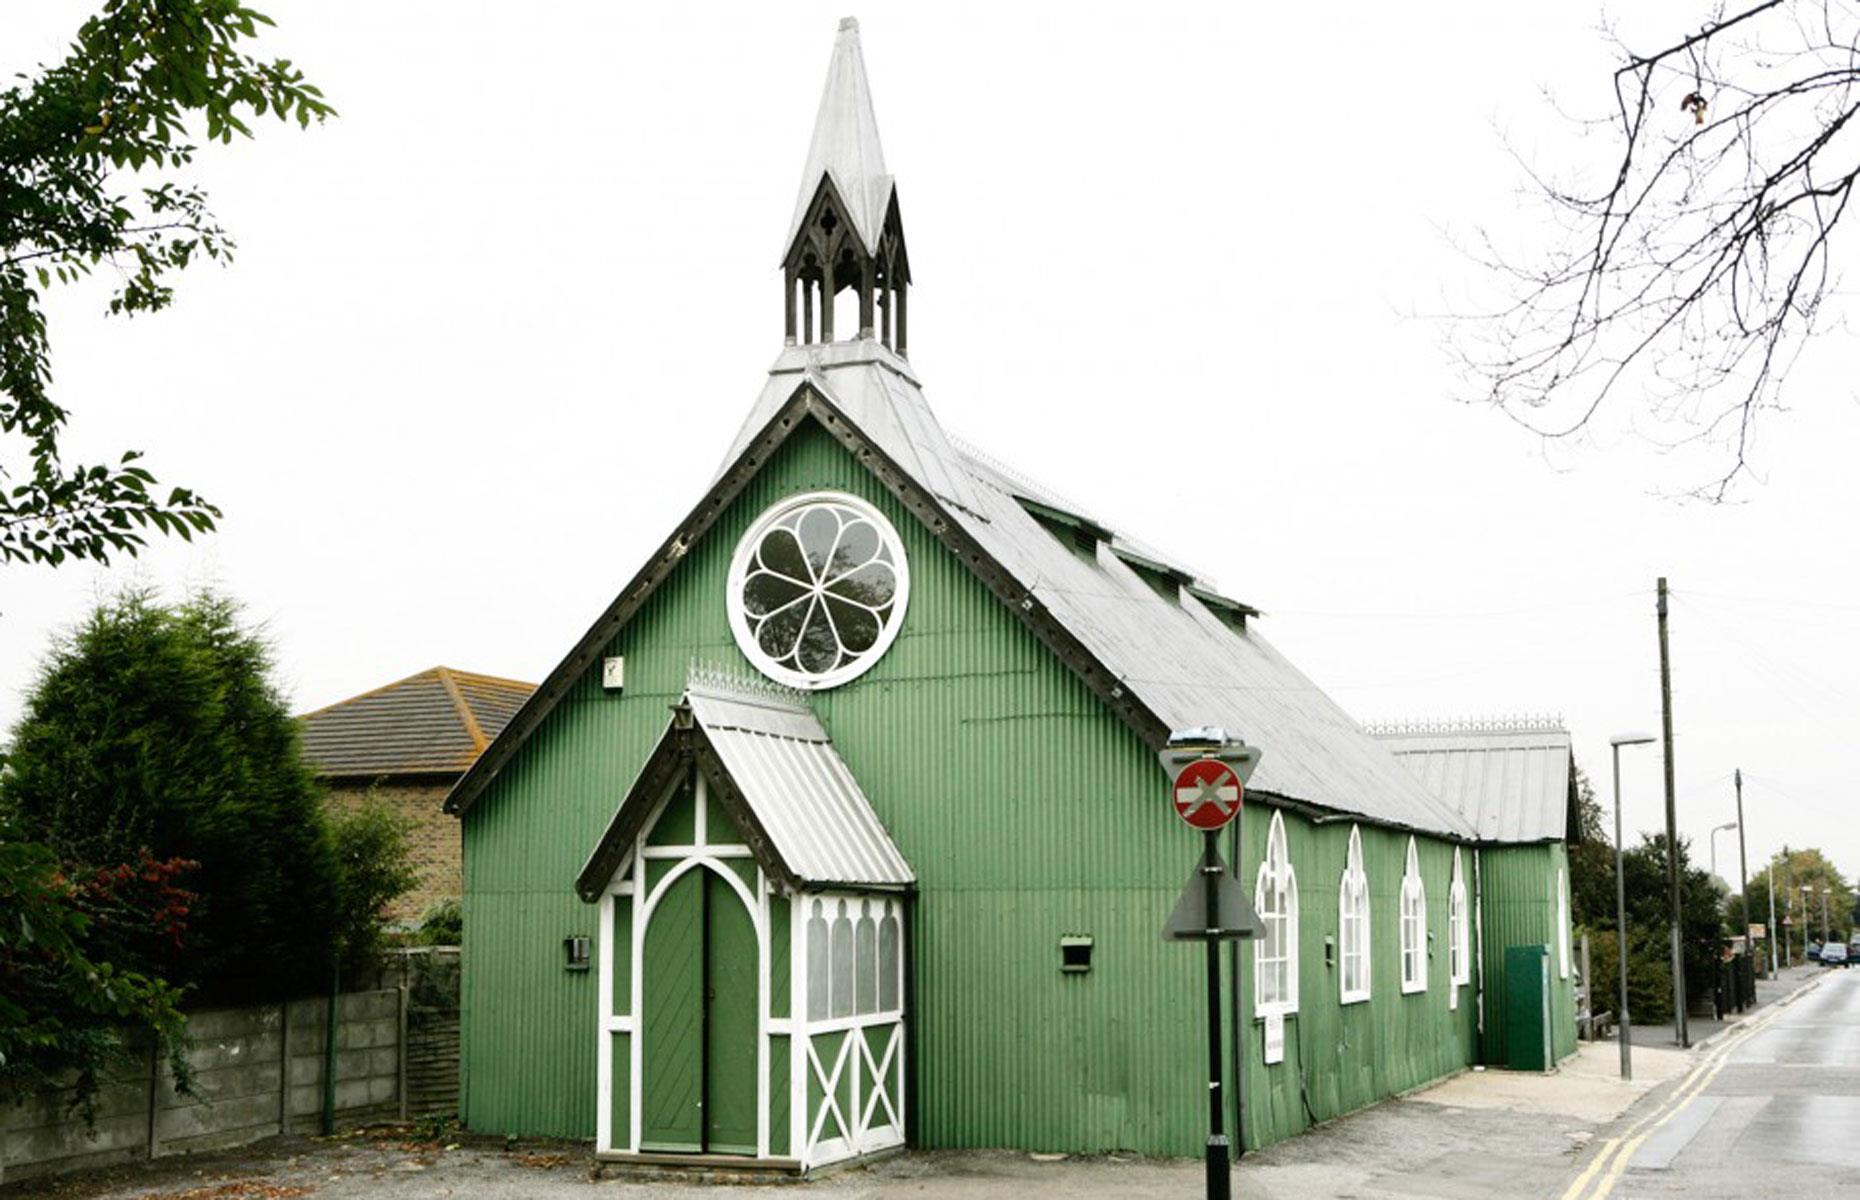 Tin Church, Kent, UK